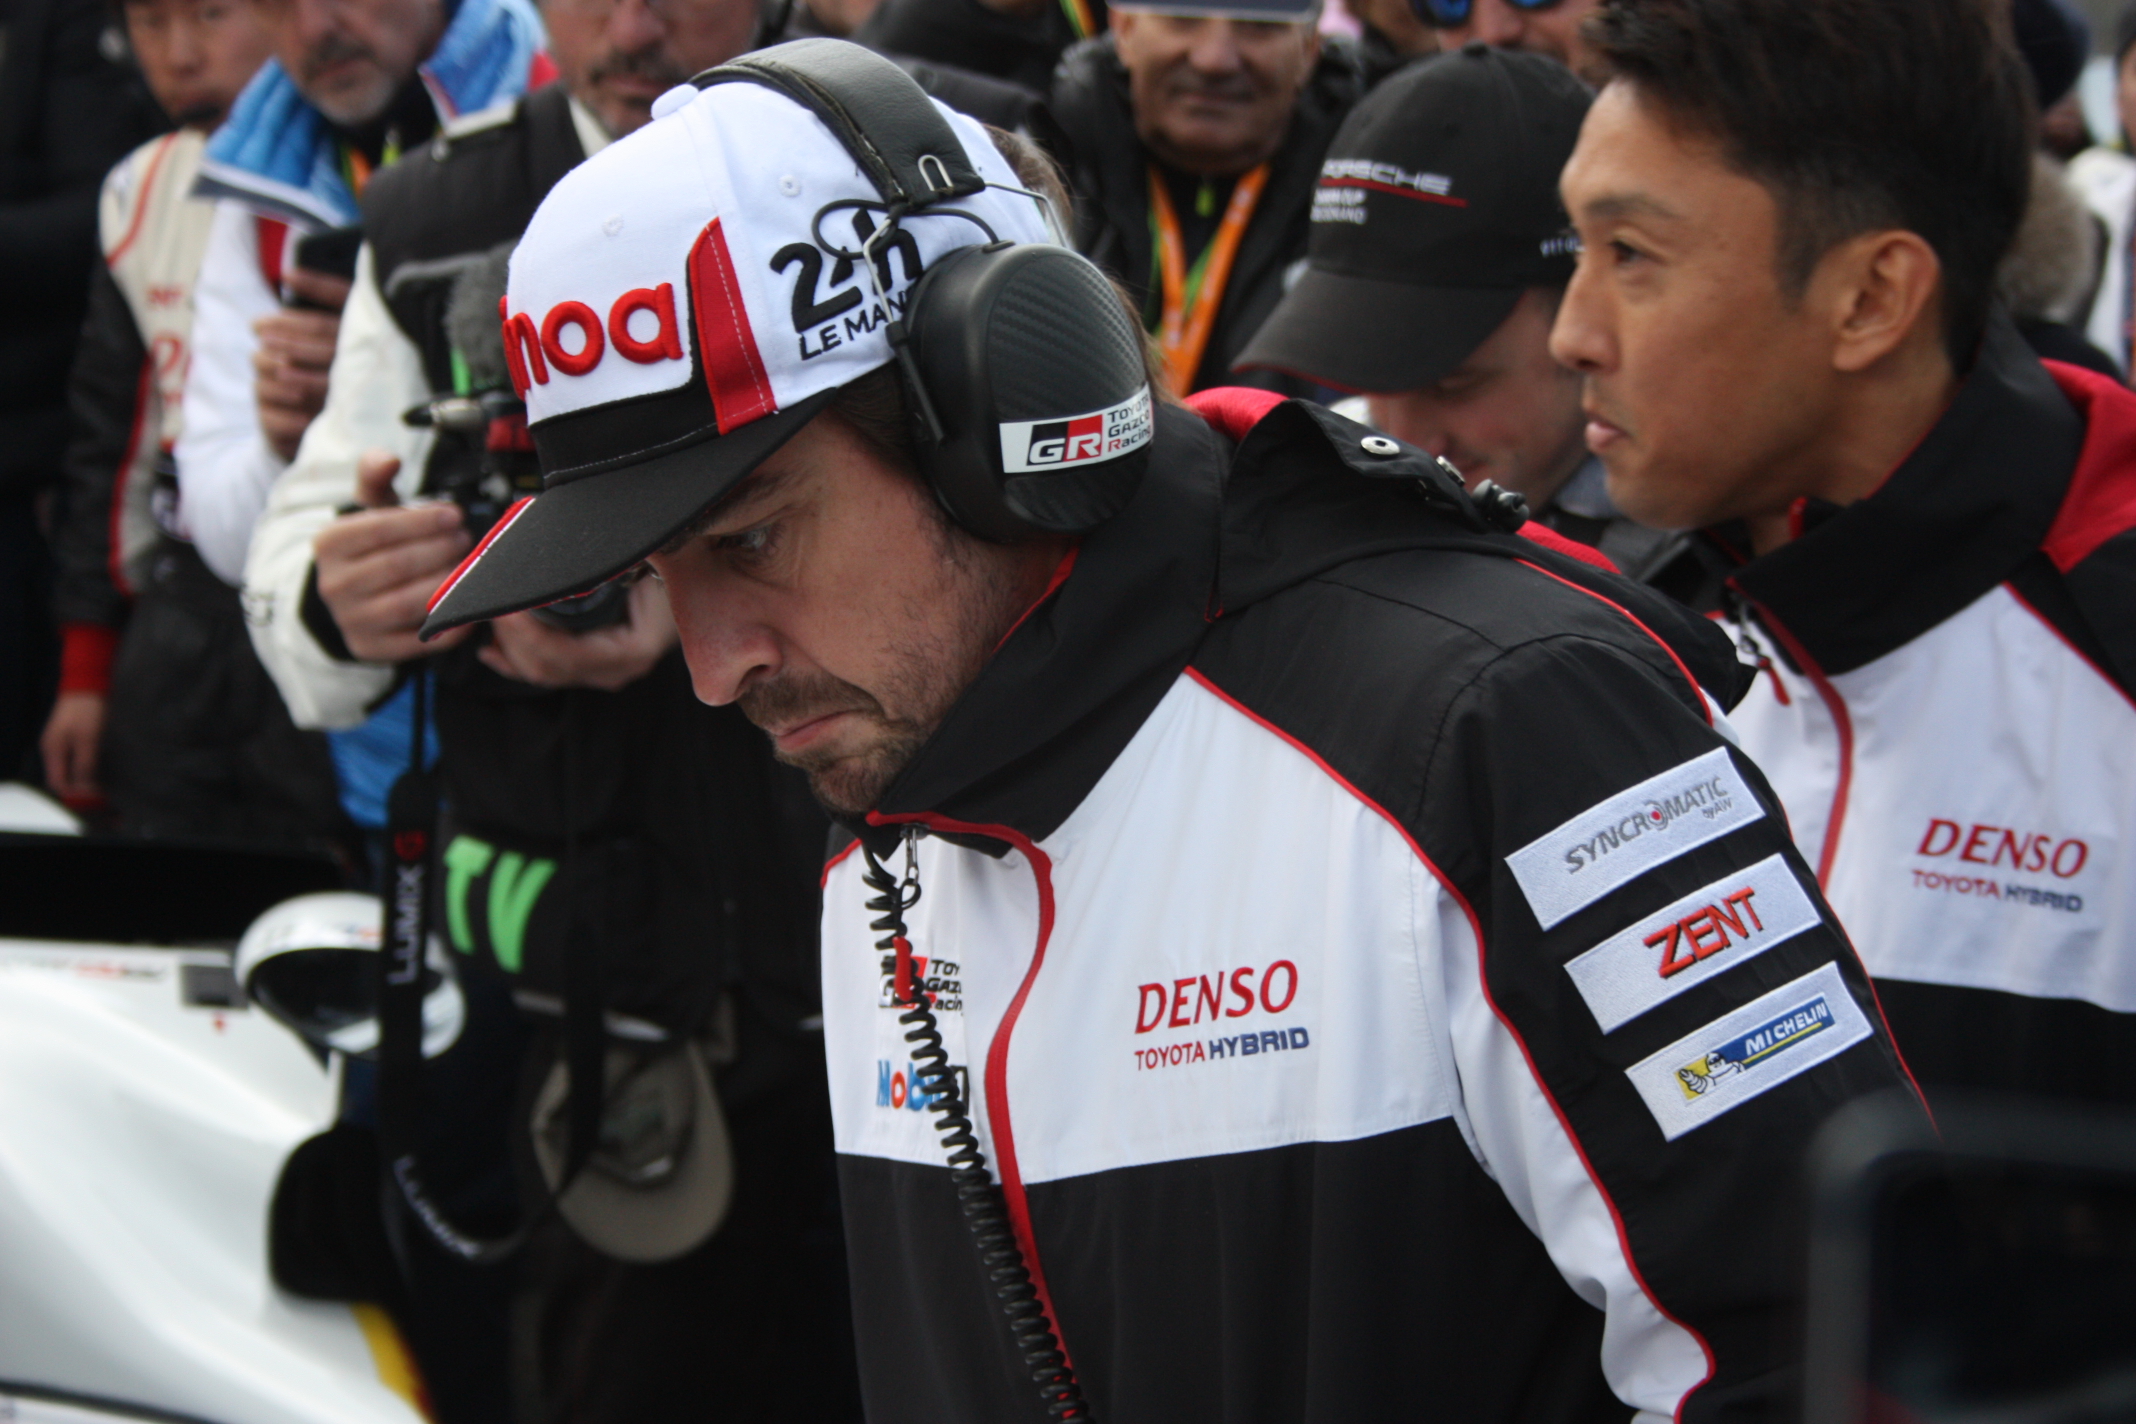 Alonso těsně před startem, vedle něj je jeho týmový kolega Nakajima